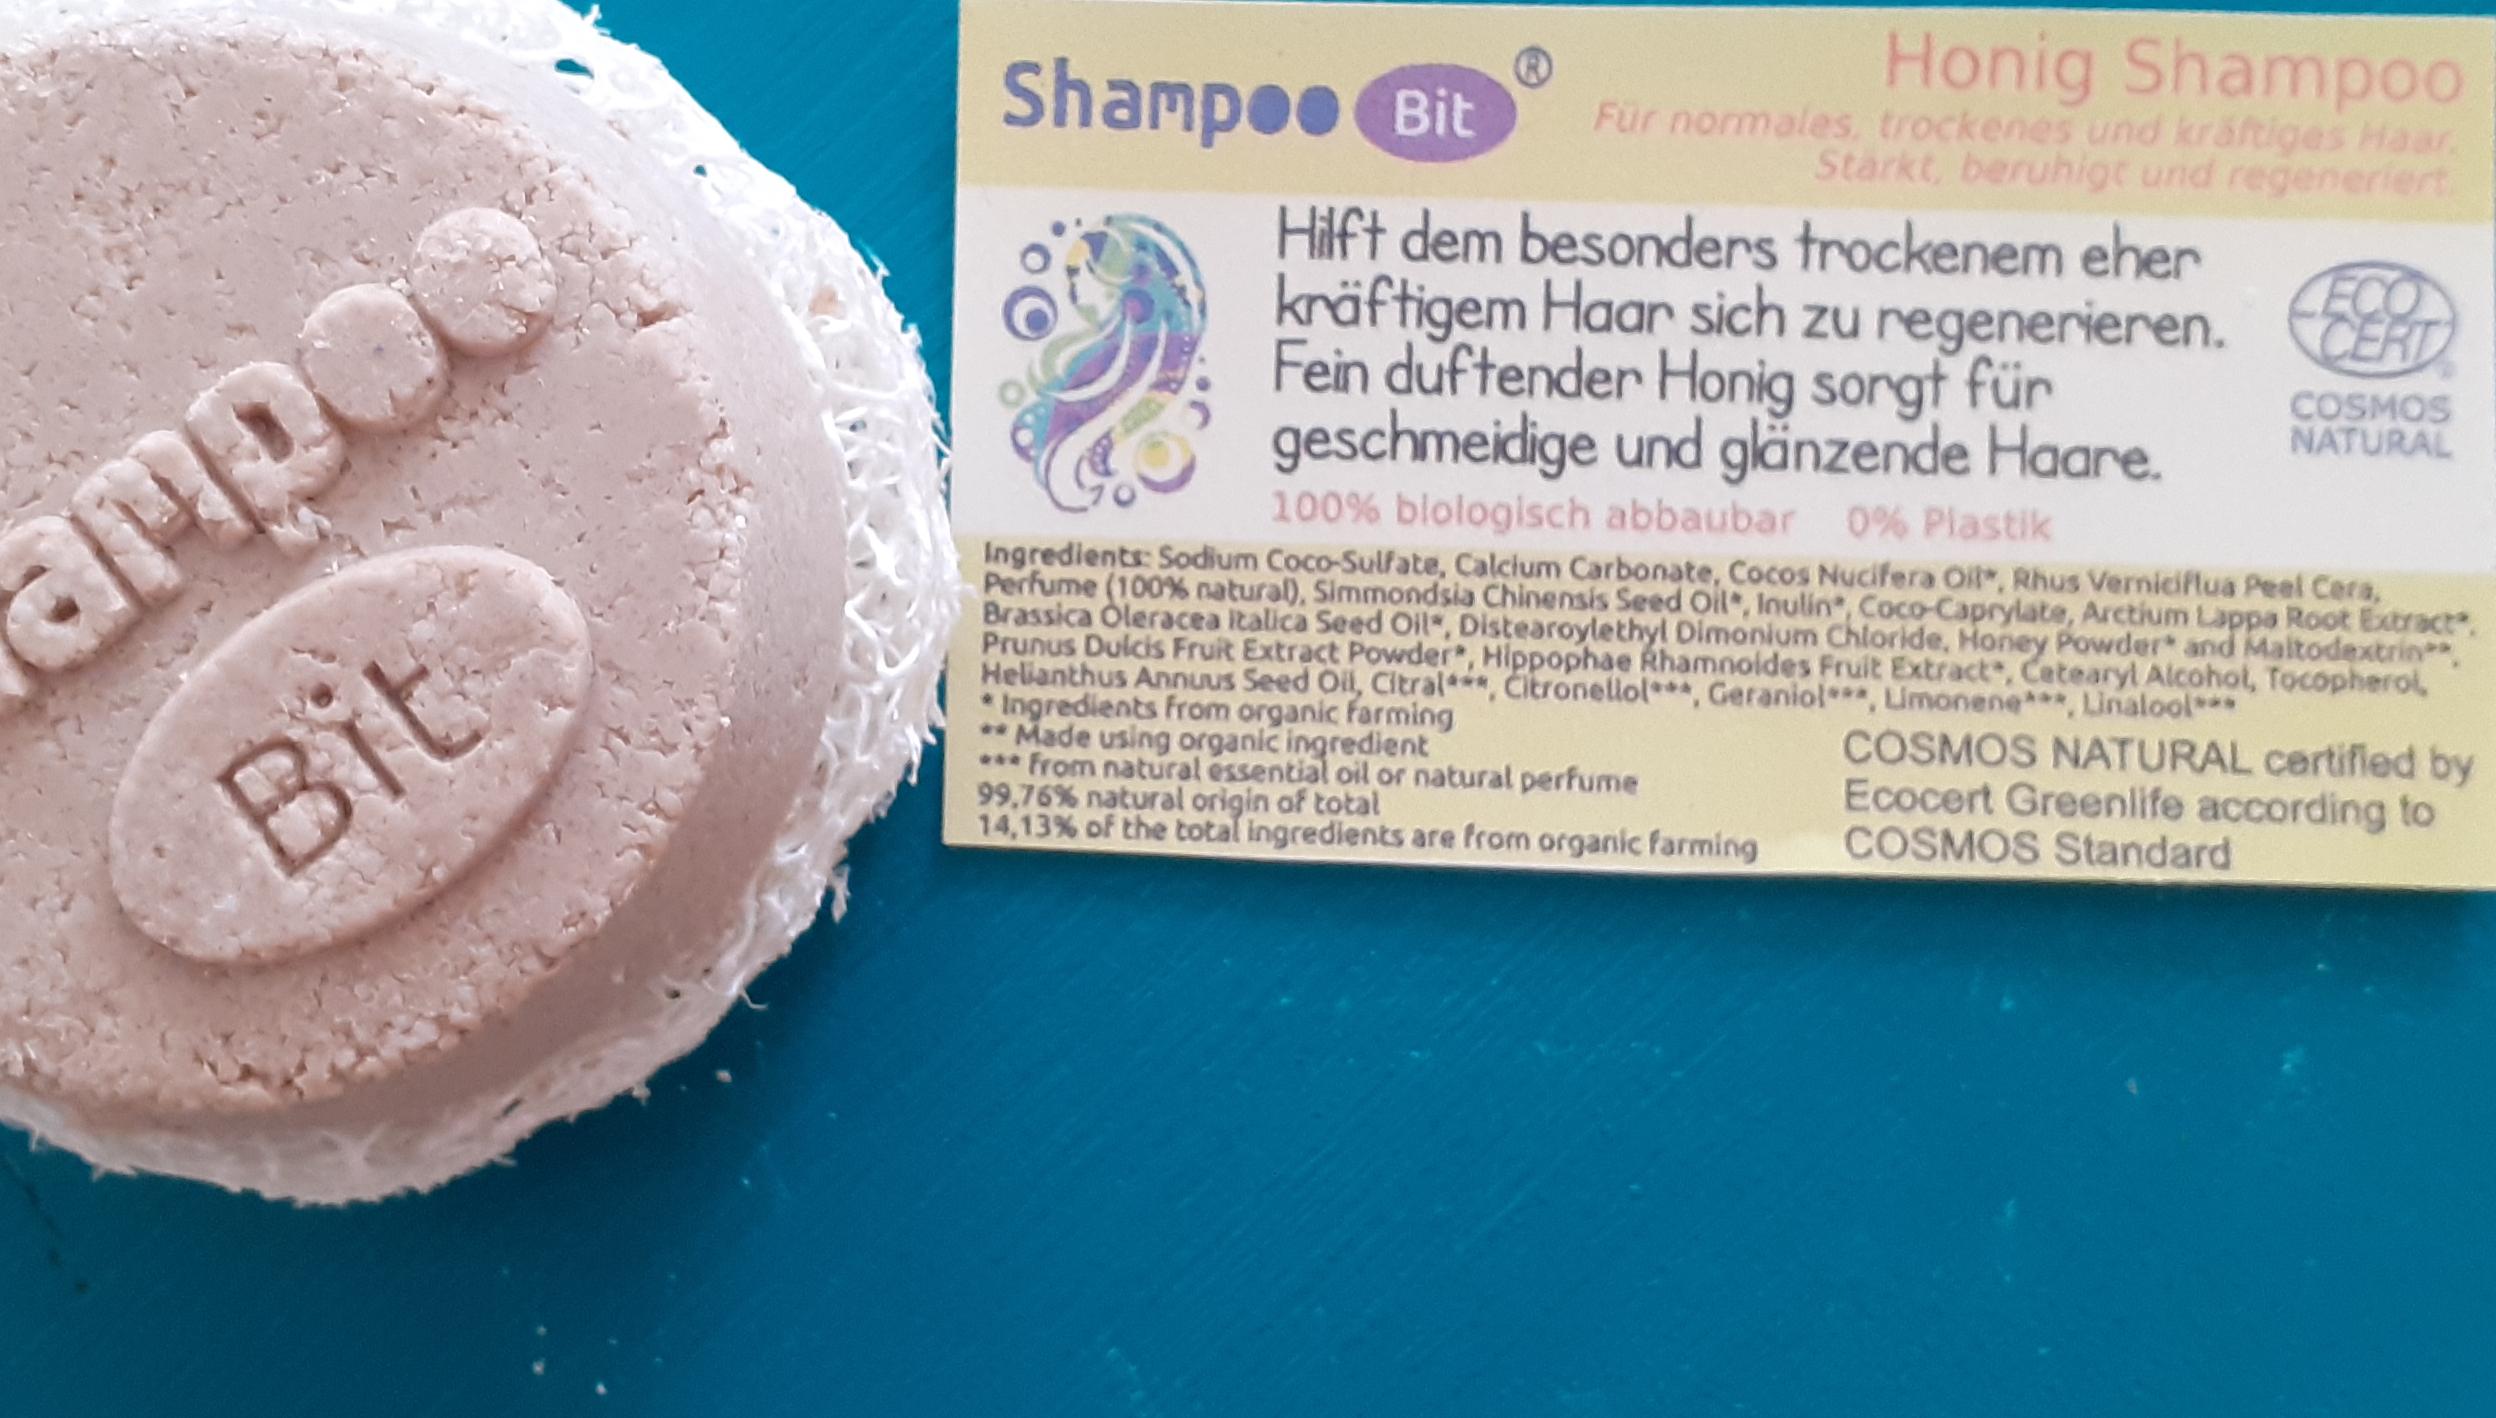 Shampoo Bit von Rosenrot, Honig